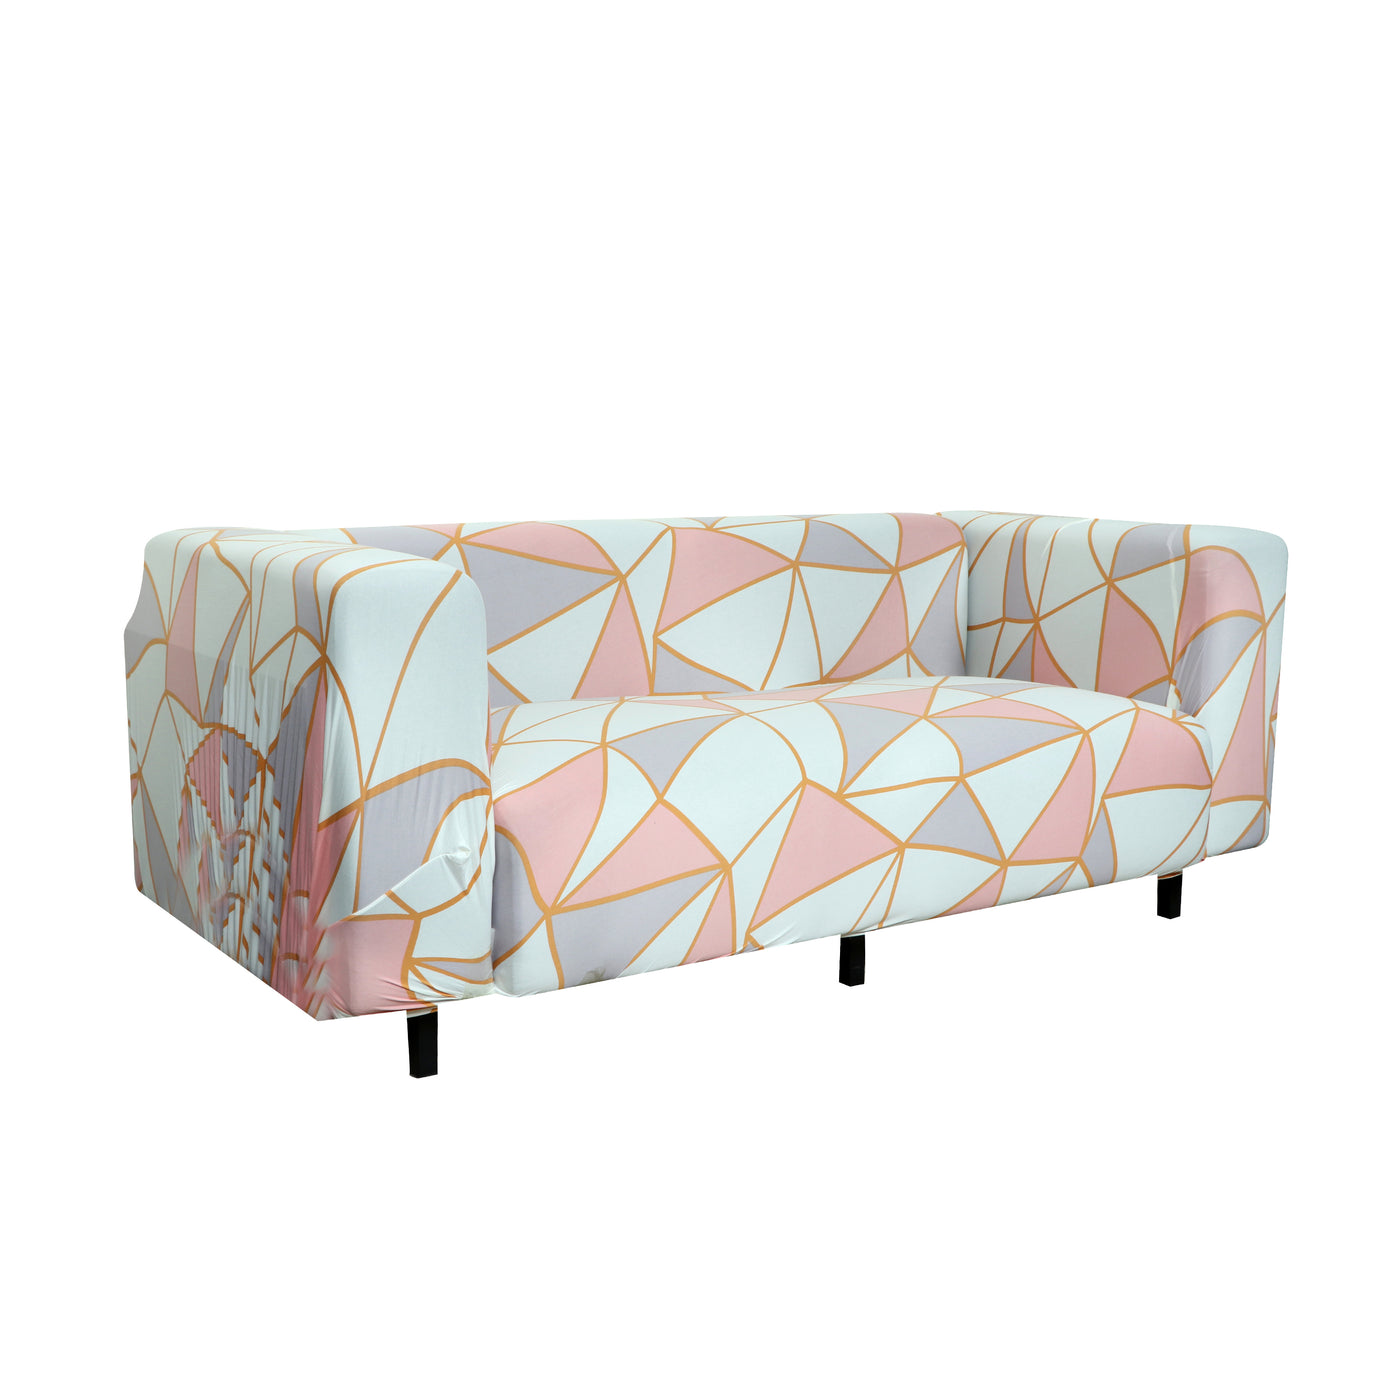 Printed Sofa Cover - Pink Prism